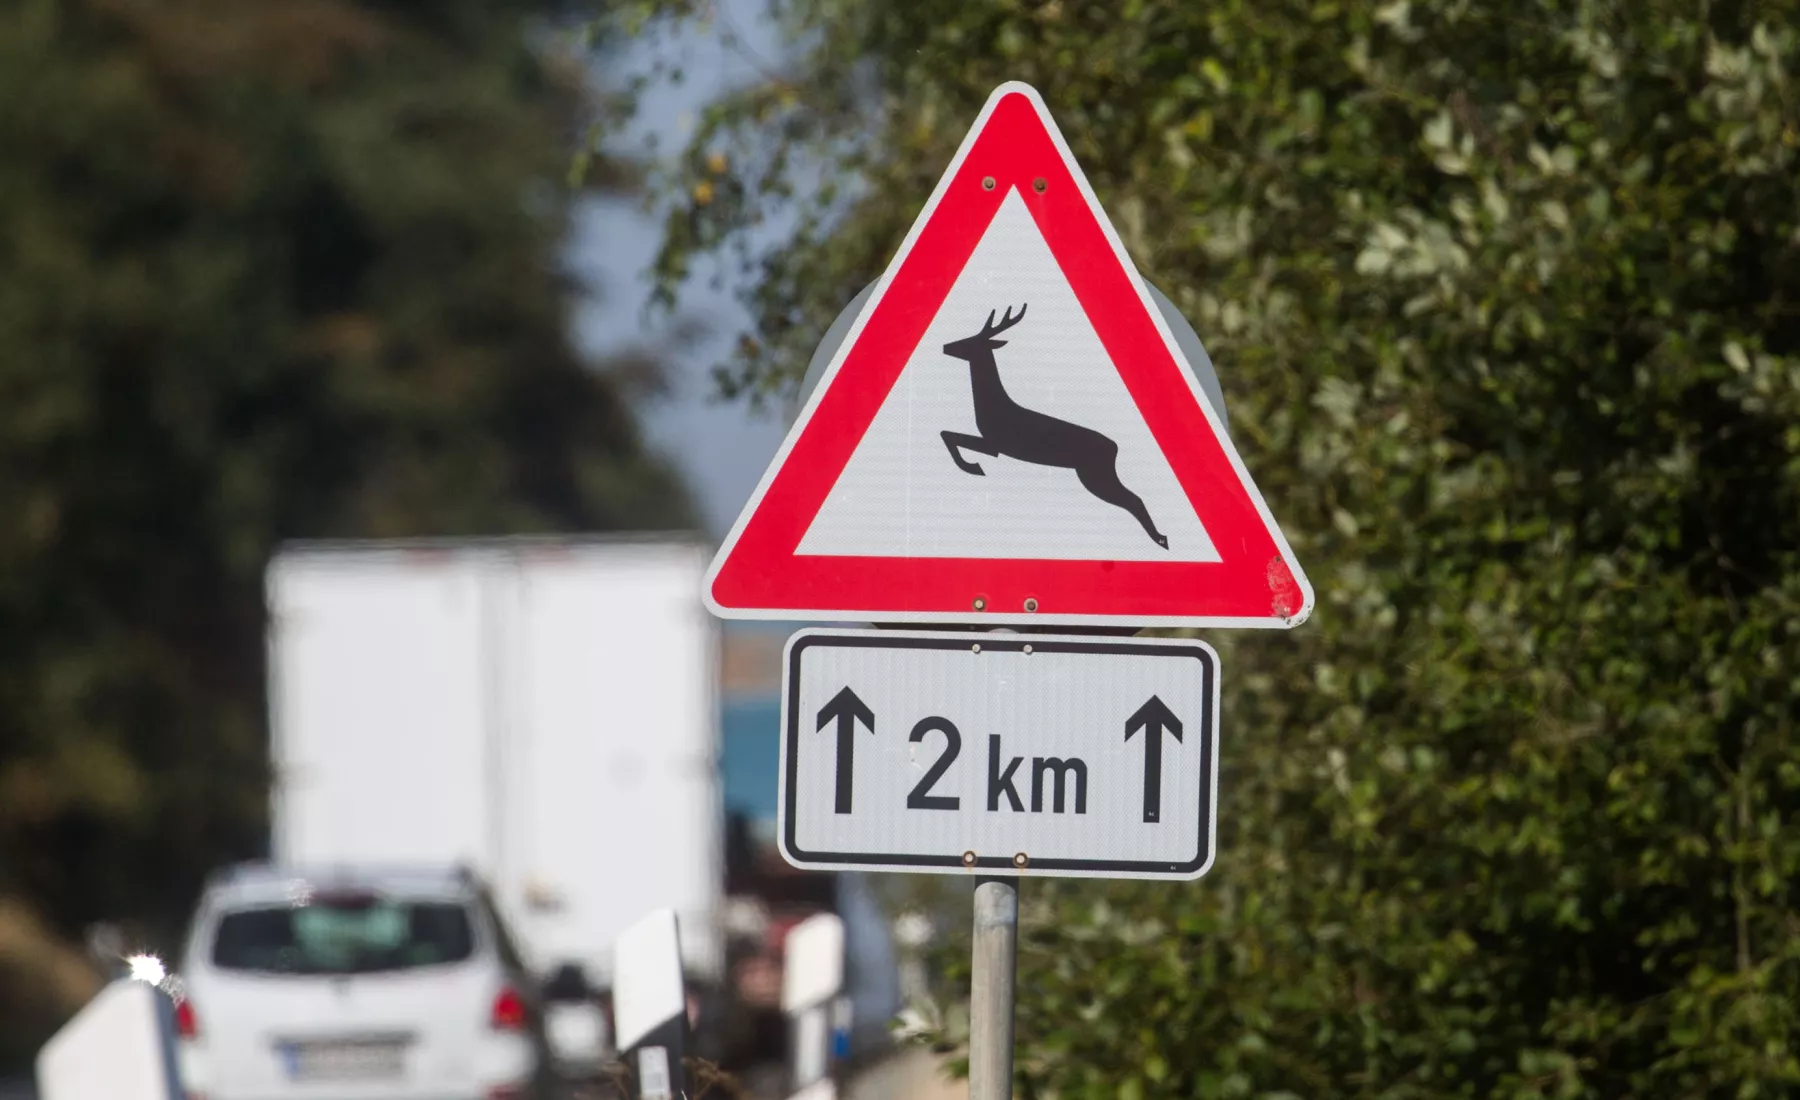 Symbolbild: Verkehrsschild warnt vor Wildwechsel